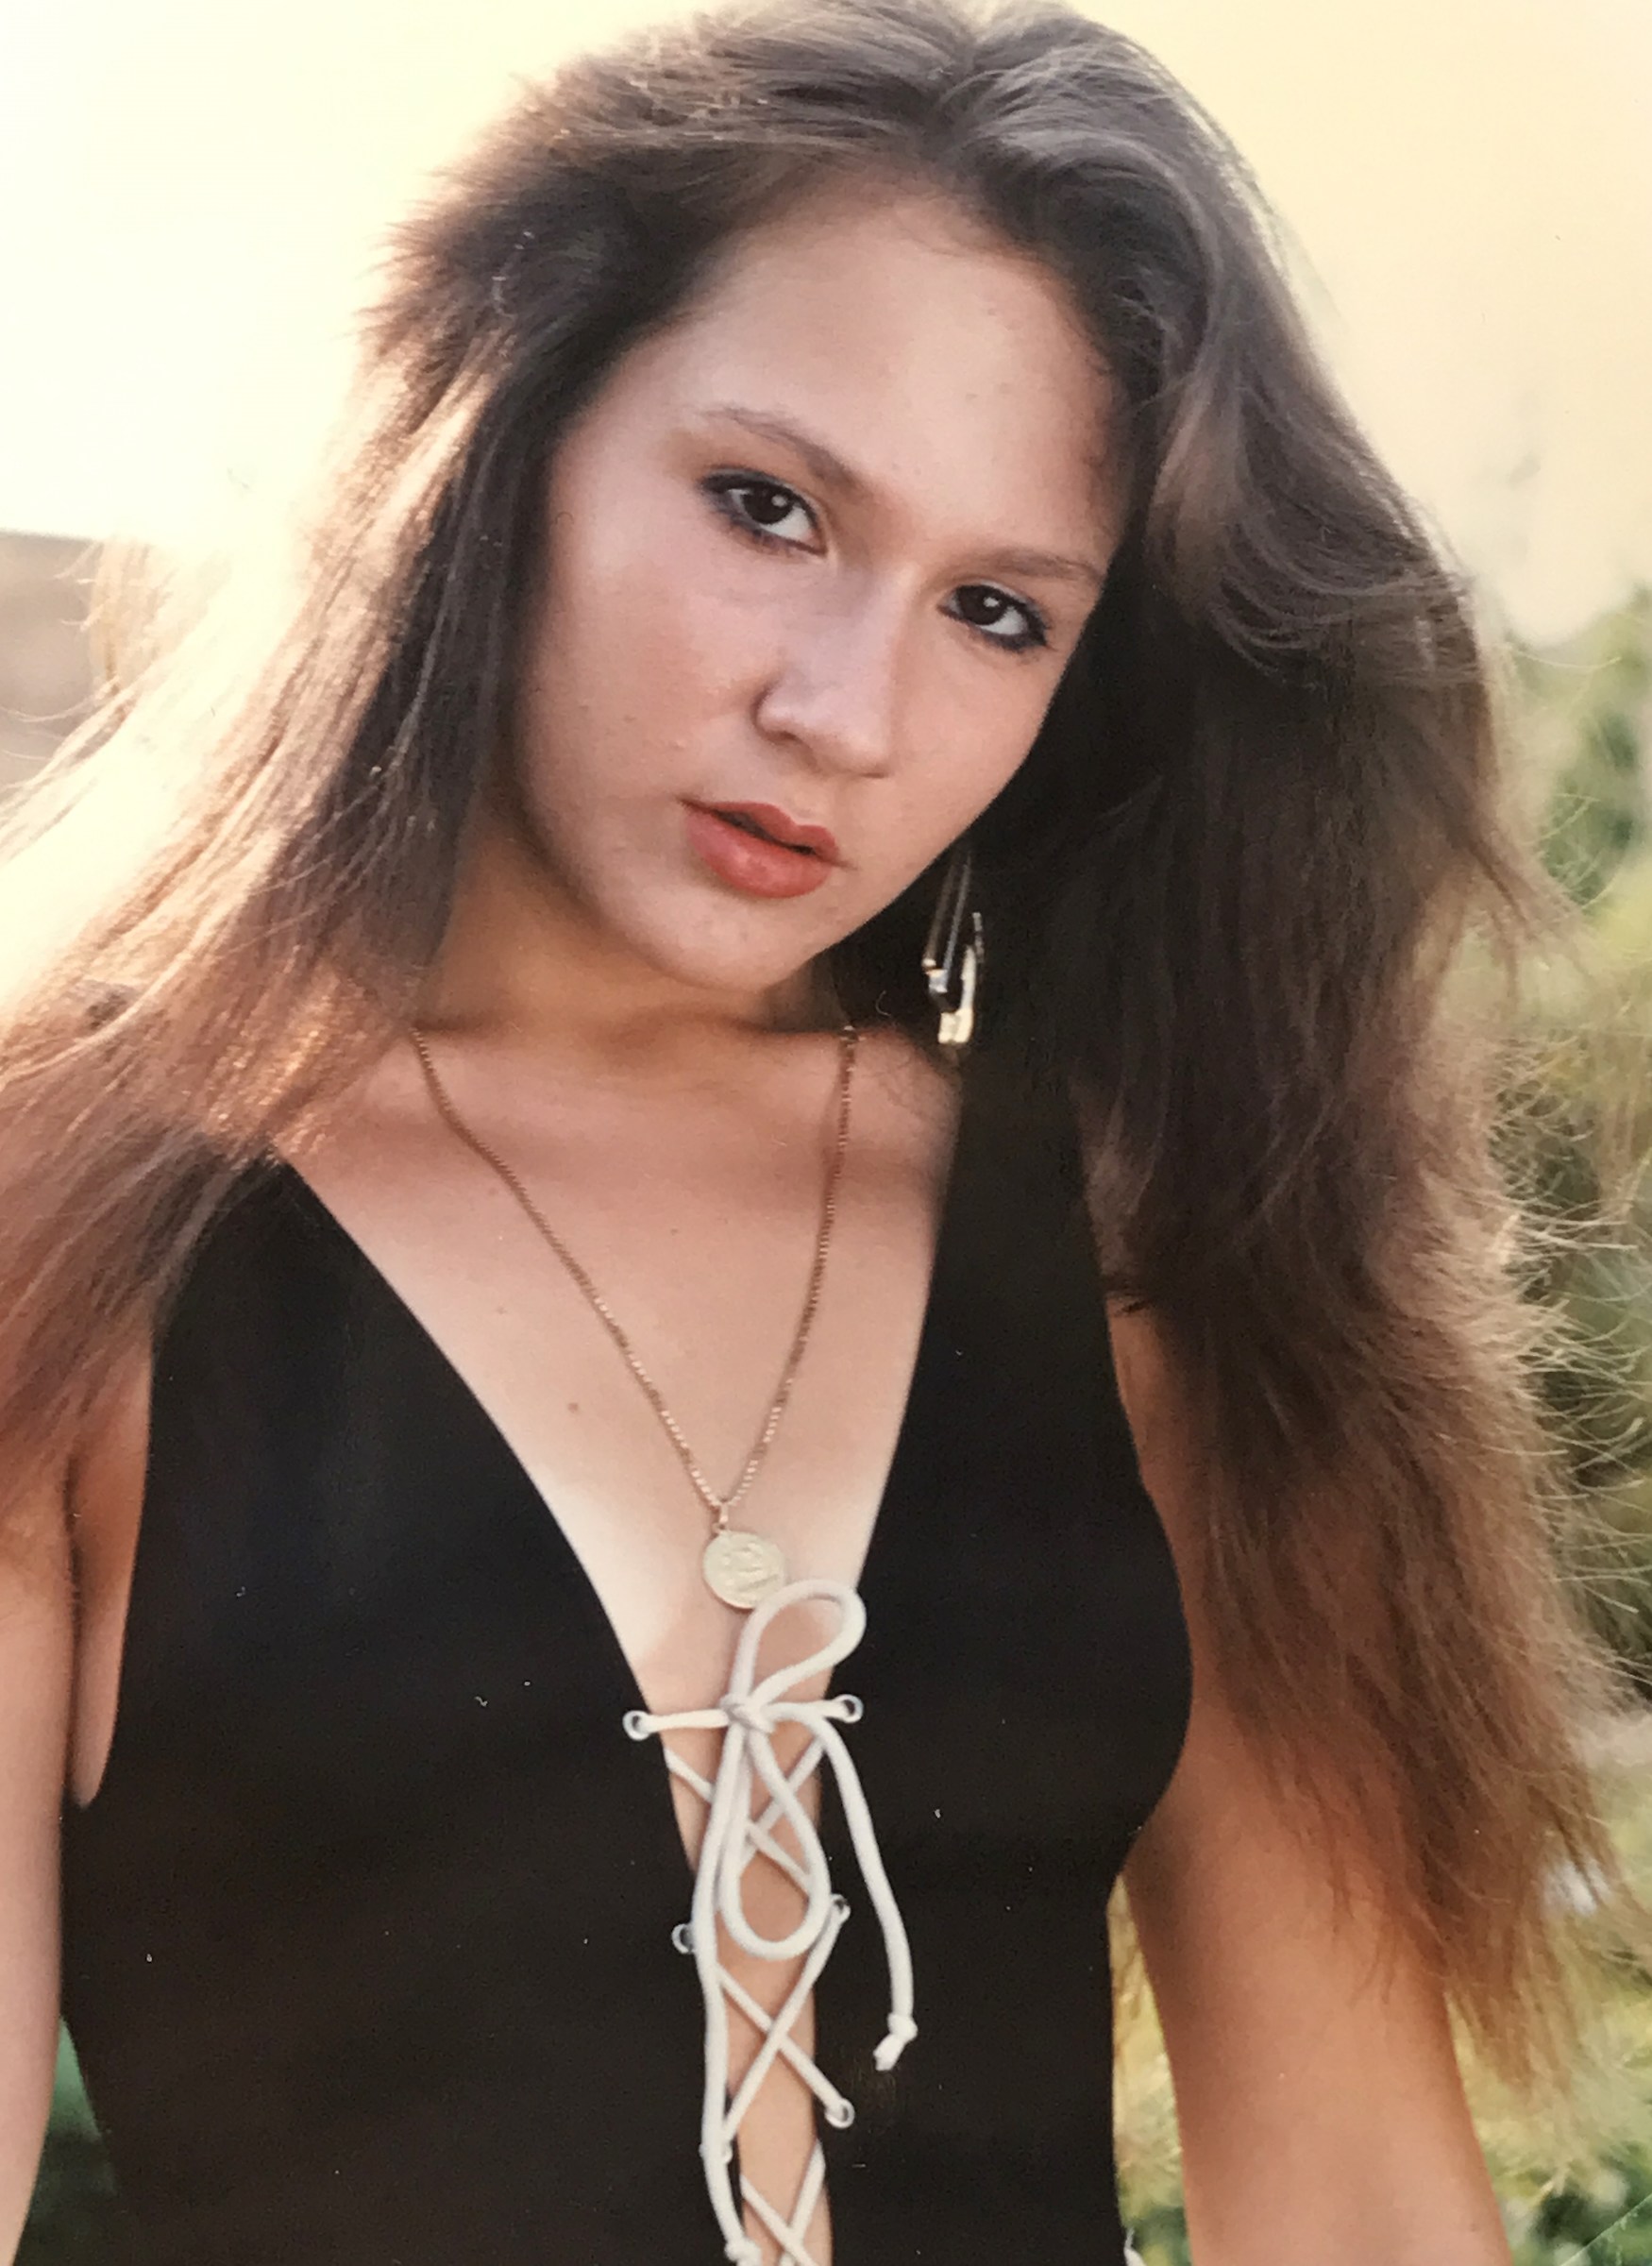 Blonde girl in the 1980's....